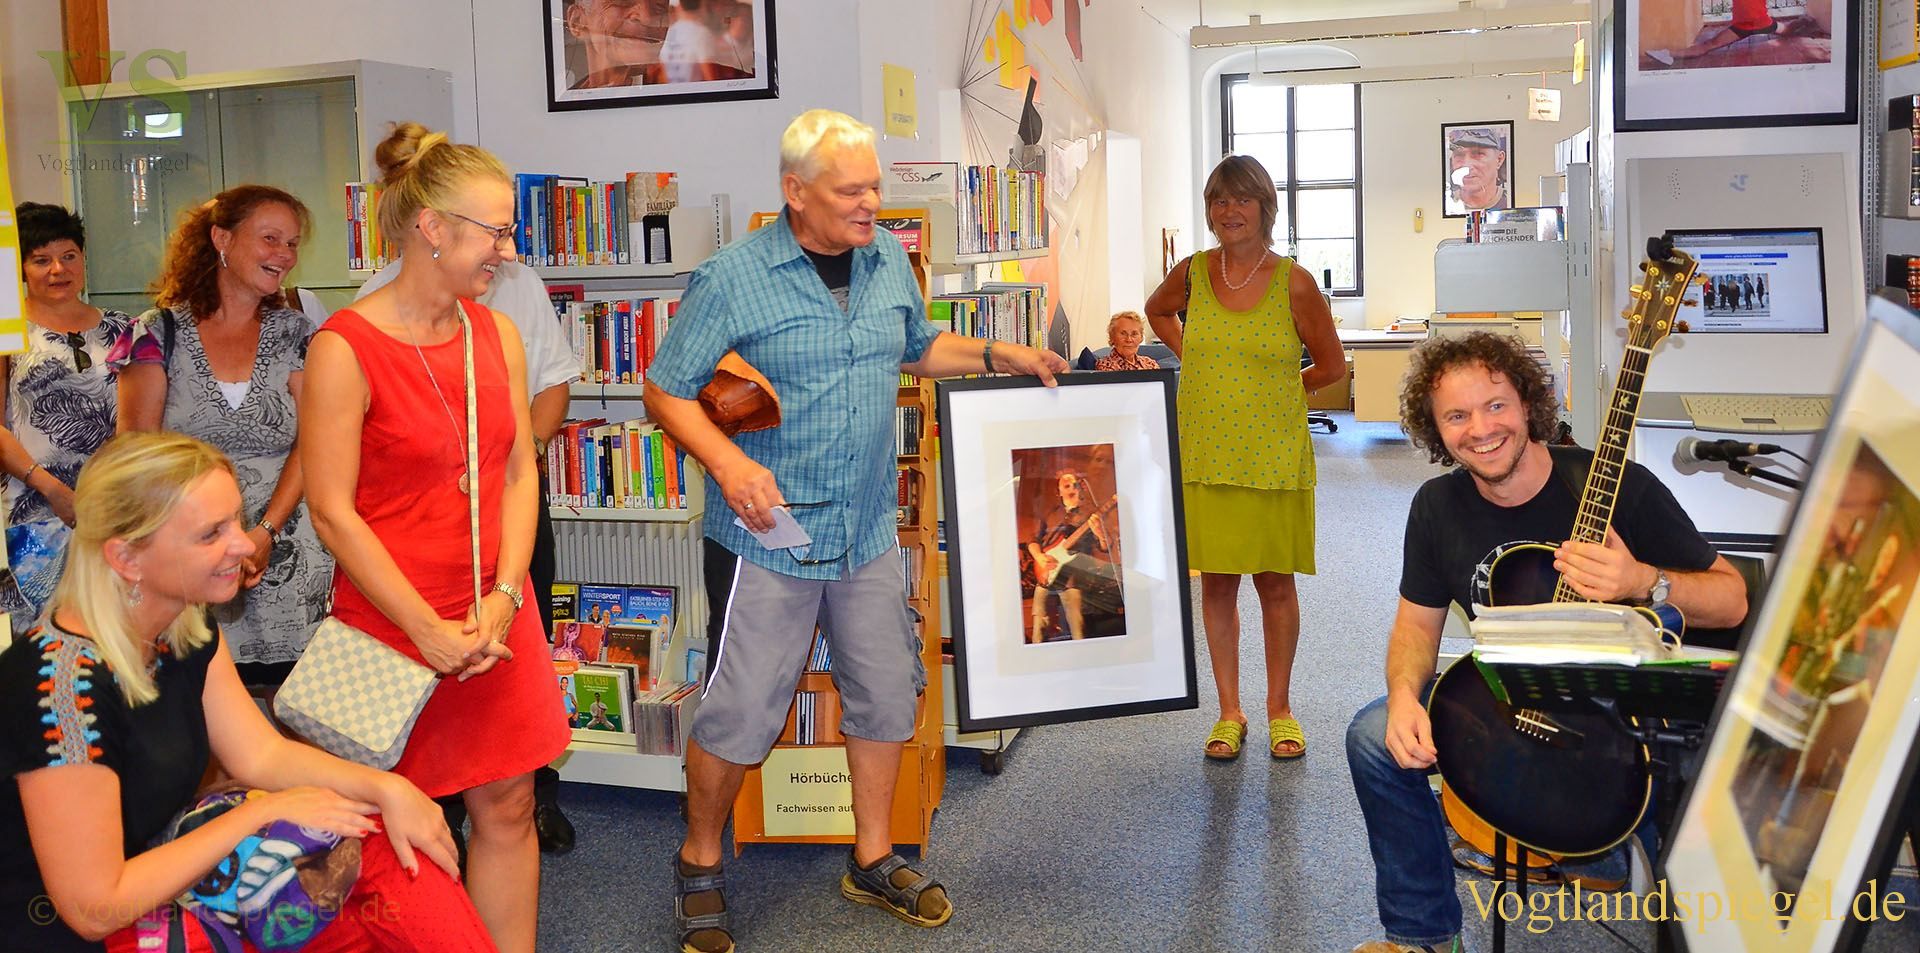 Fotoausstellung "Auge in Auge" von Michael Lebek in Greizer Bibliothek eröffnet